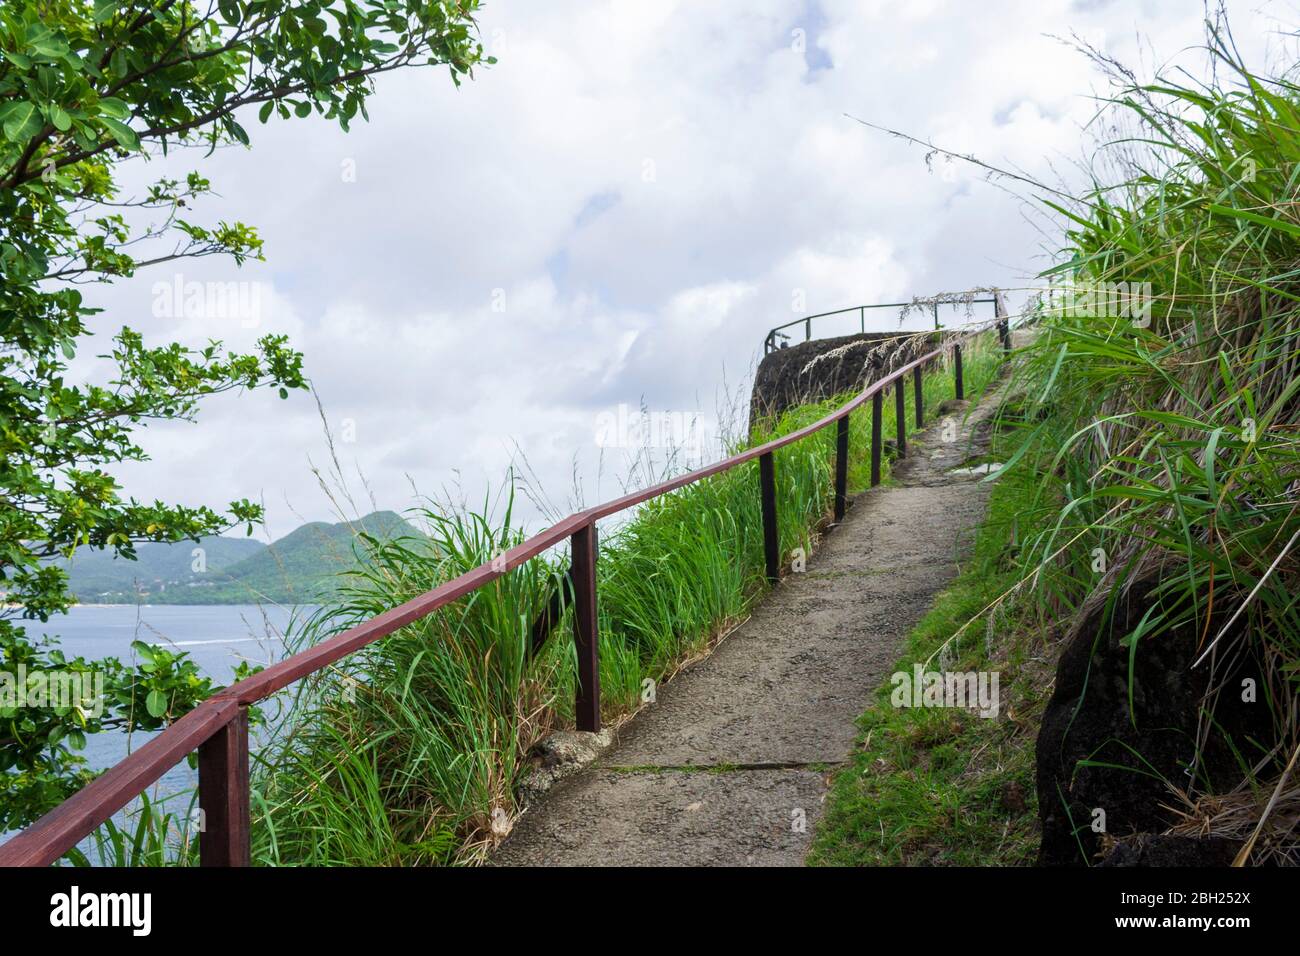 Vista mozzafiato del sentiero in cemento con corrimano in legno con erba verde e alberi su entrambi i lati che portano alla cima di Fort Rodney Foto Stock